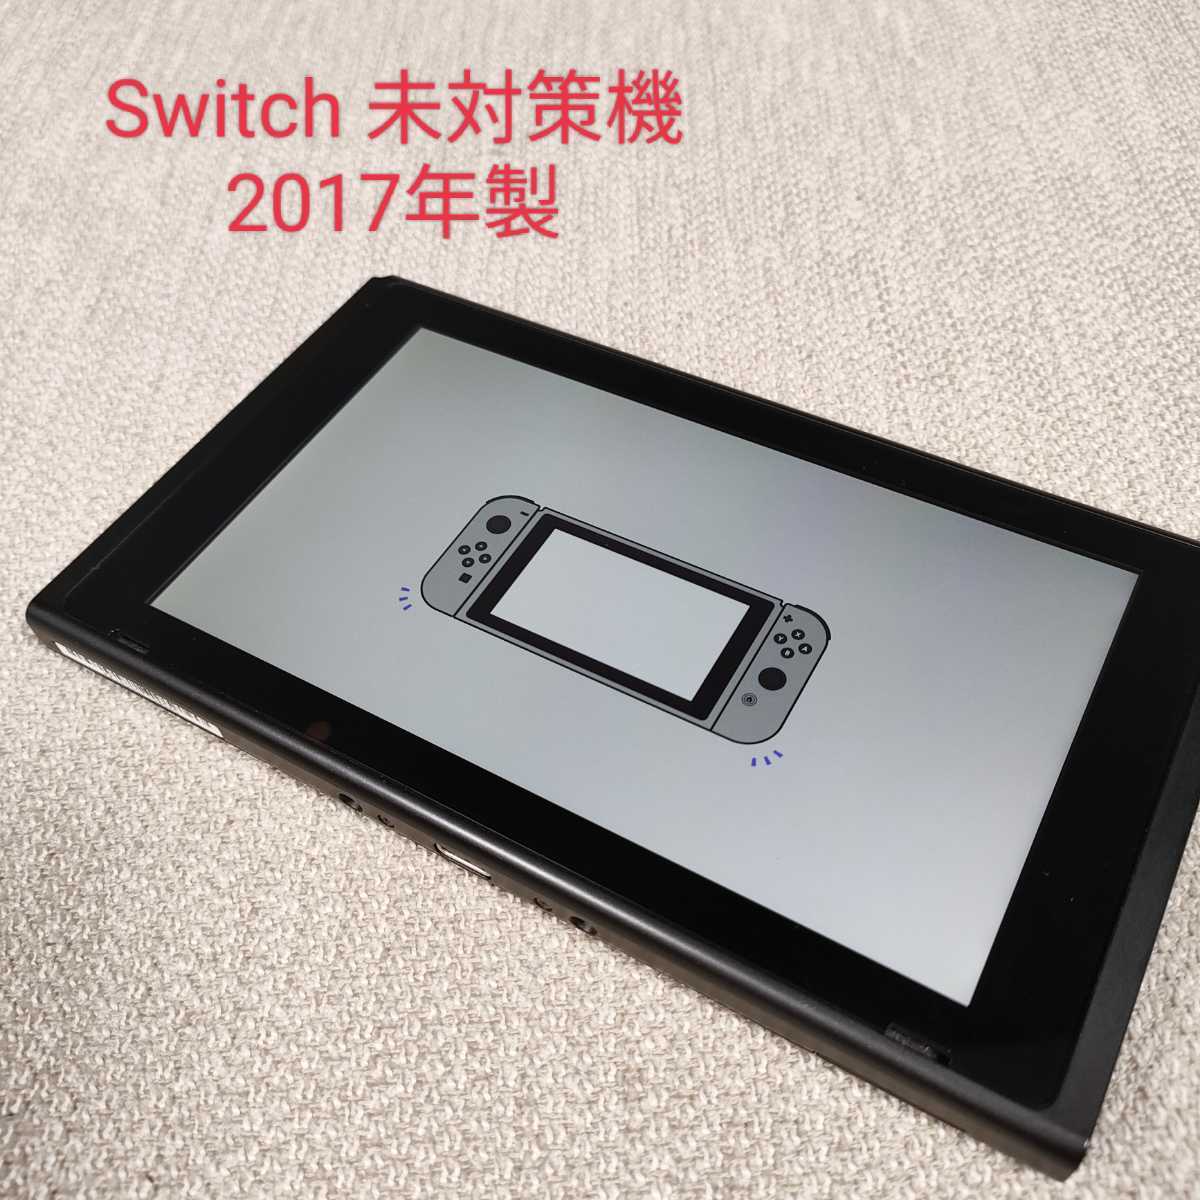 ファッション通販サイト Nintendo Switch 未対策機 hek293.com